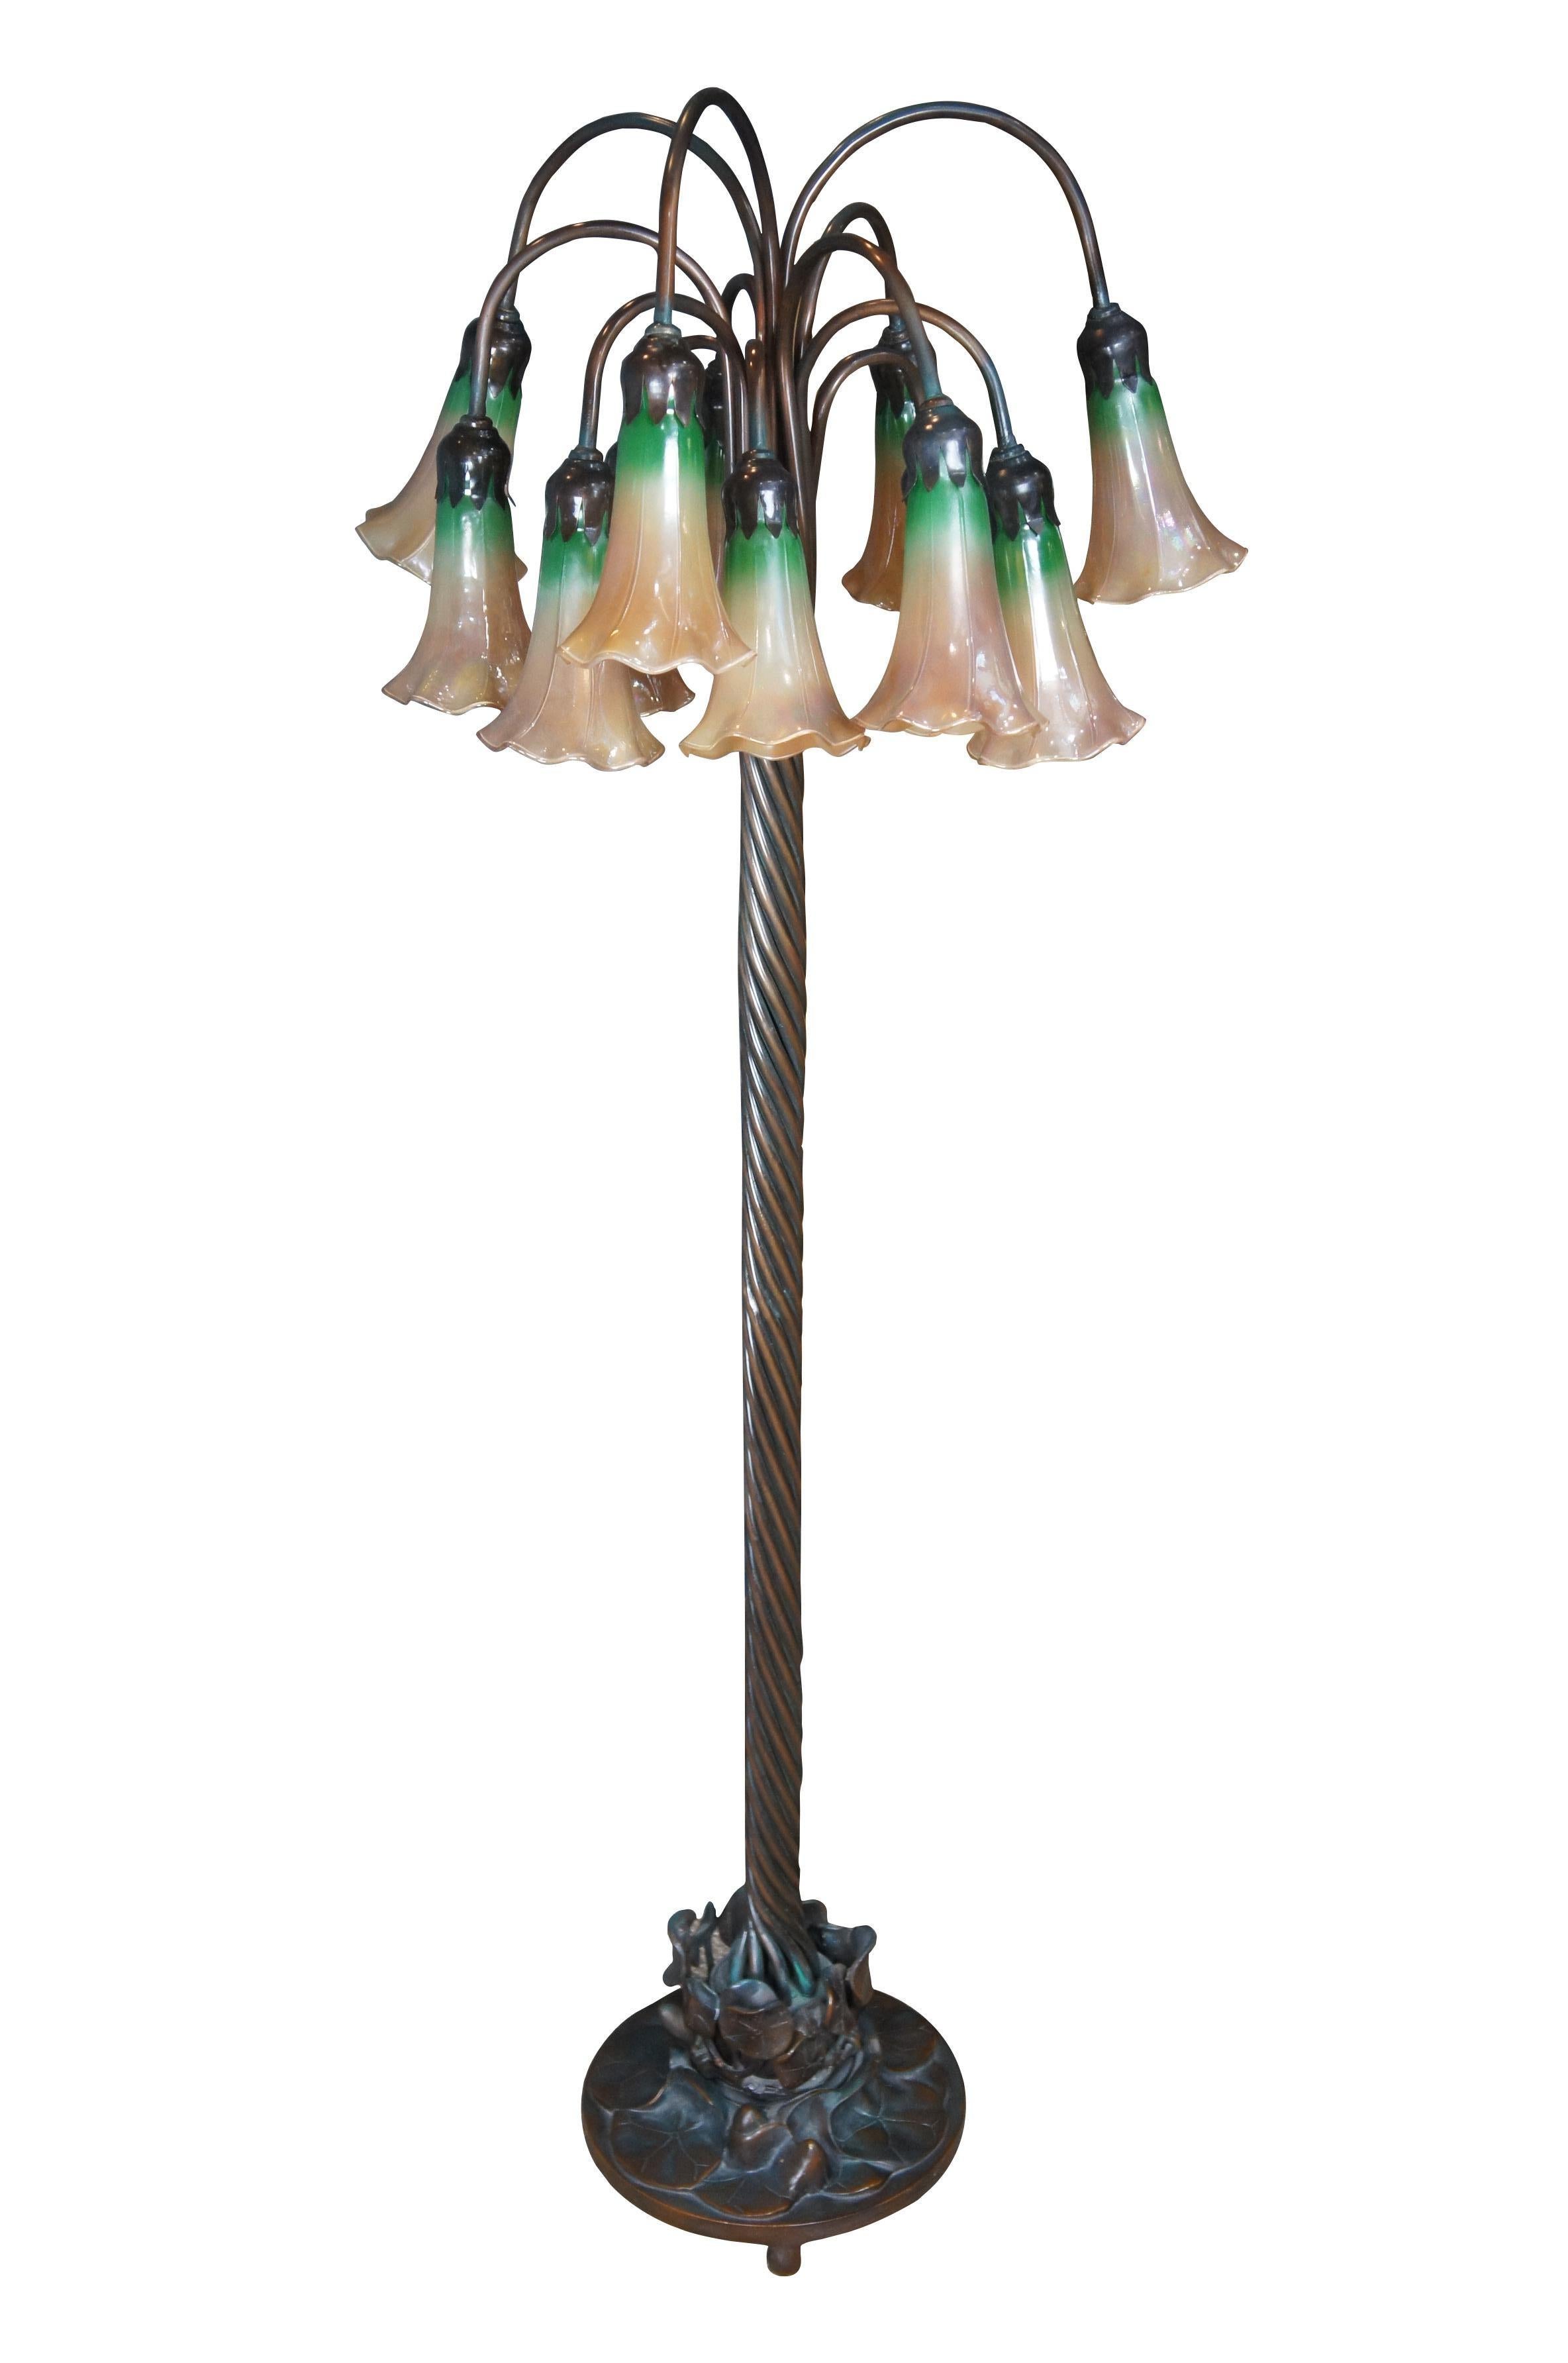 Vintage Stehlampe im Tiffany-Stil aus schwerer Bronze im Jugendstil mit gedrehter Säule und Lily pad Sockel, der zwölf florale Tulpenglasschirme trägt.  Gekennzeichnet mit kembia astm 88-k.  Die Lampe enthält zwei zusätzliche